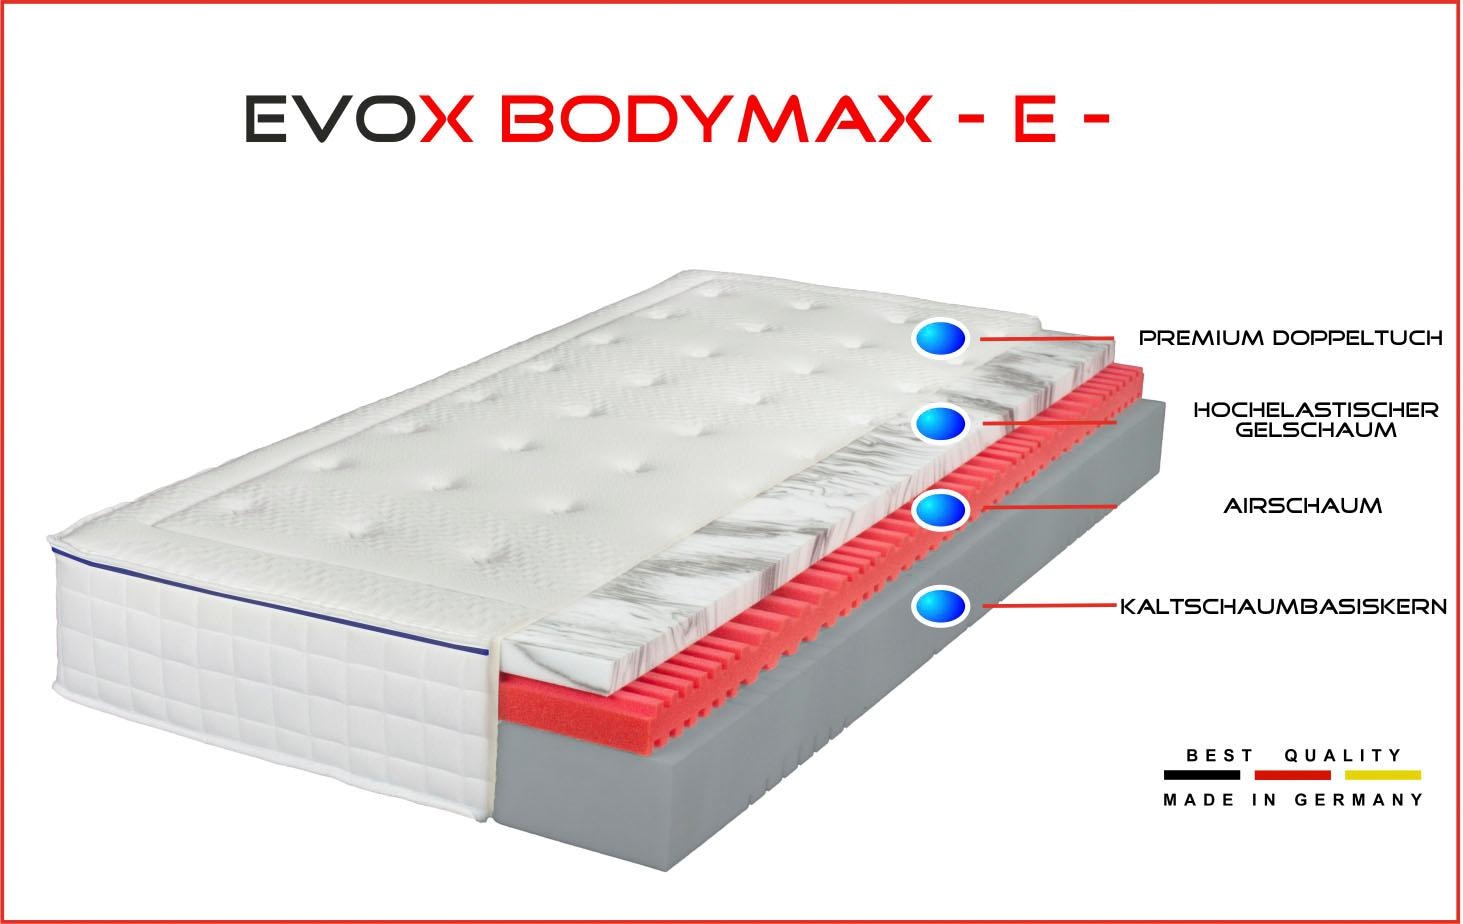 Breckle Northeim Gelschaummatratze »EVOX Bodymax E«, 24 cm hoch, Raumgewicht: 50 kg/m³, (1 St.), Empfohlen für Körpertypen mit ähnlich breiter Schulter und Hüfte